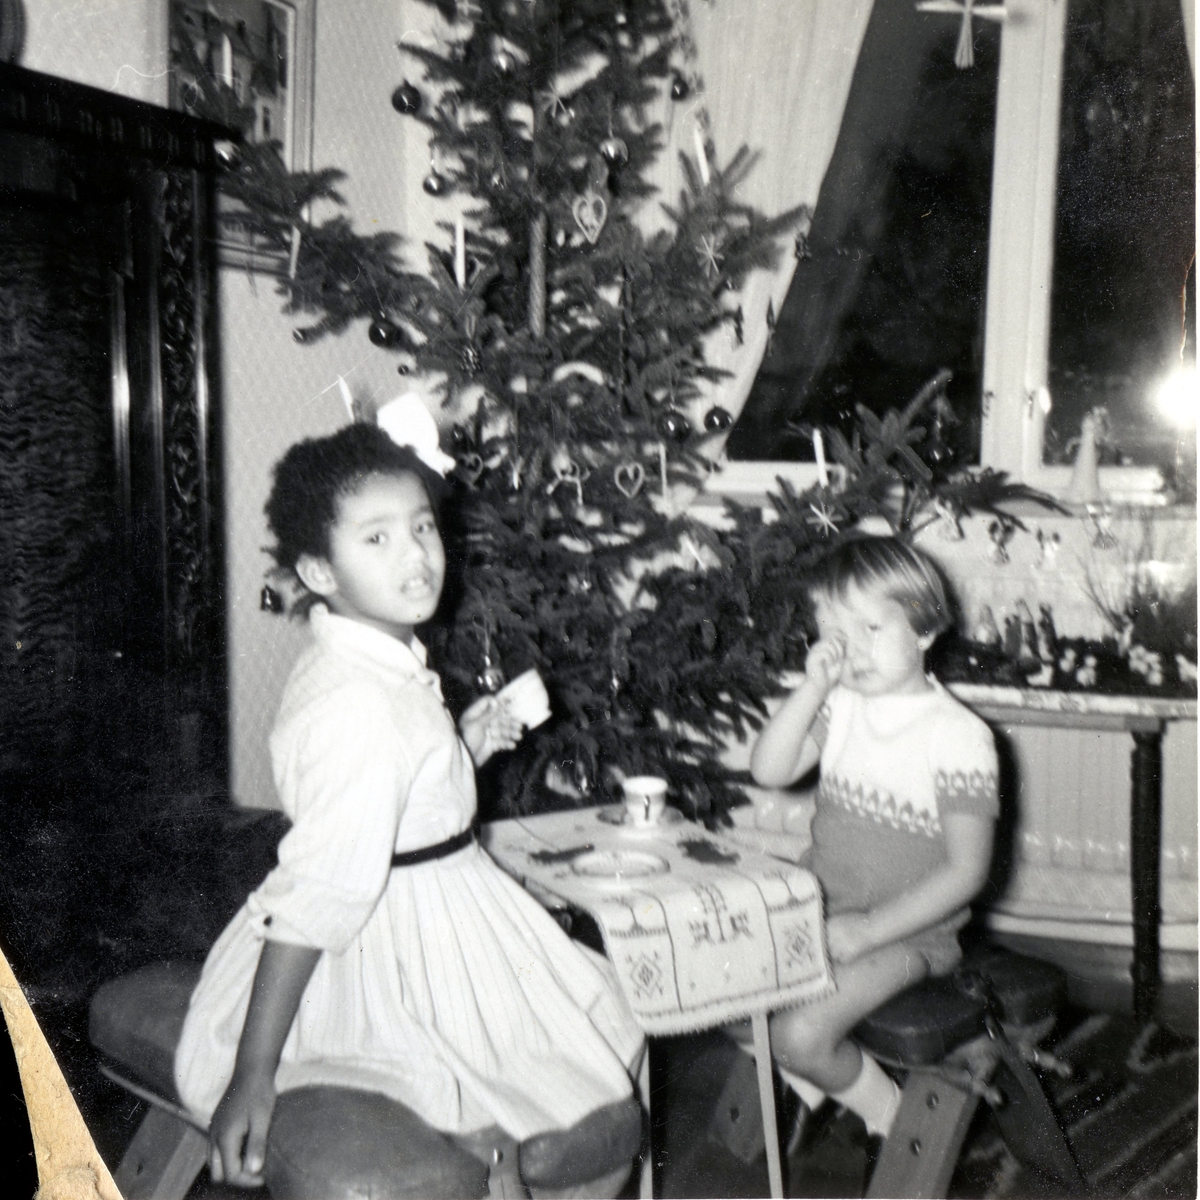 Två små vänner sitter vid ett litet bord framför julgranen och "dricker kaffe" i Manne Ekmans föräldrahem, Rothwalls hus på Streteredsvägen 31 Kållered år 1959. Från vänster: Susanne Kullbring (född 1953) och Manne Ekman (född 1955). Susanne och Manne var barndomskamrater och bodde grannar. Relaterat motiv: A2873.